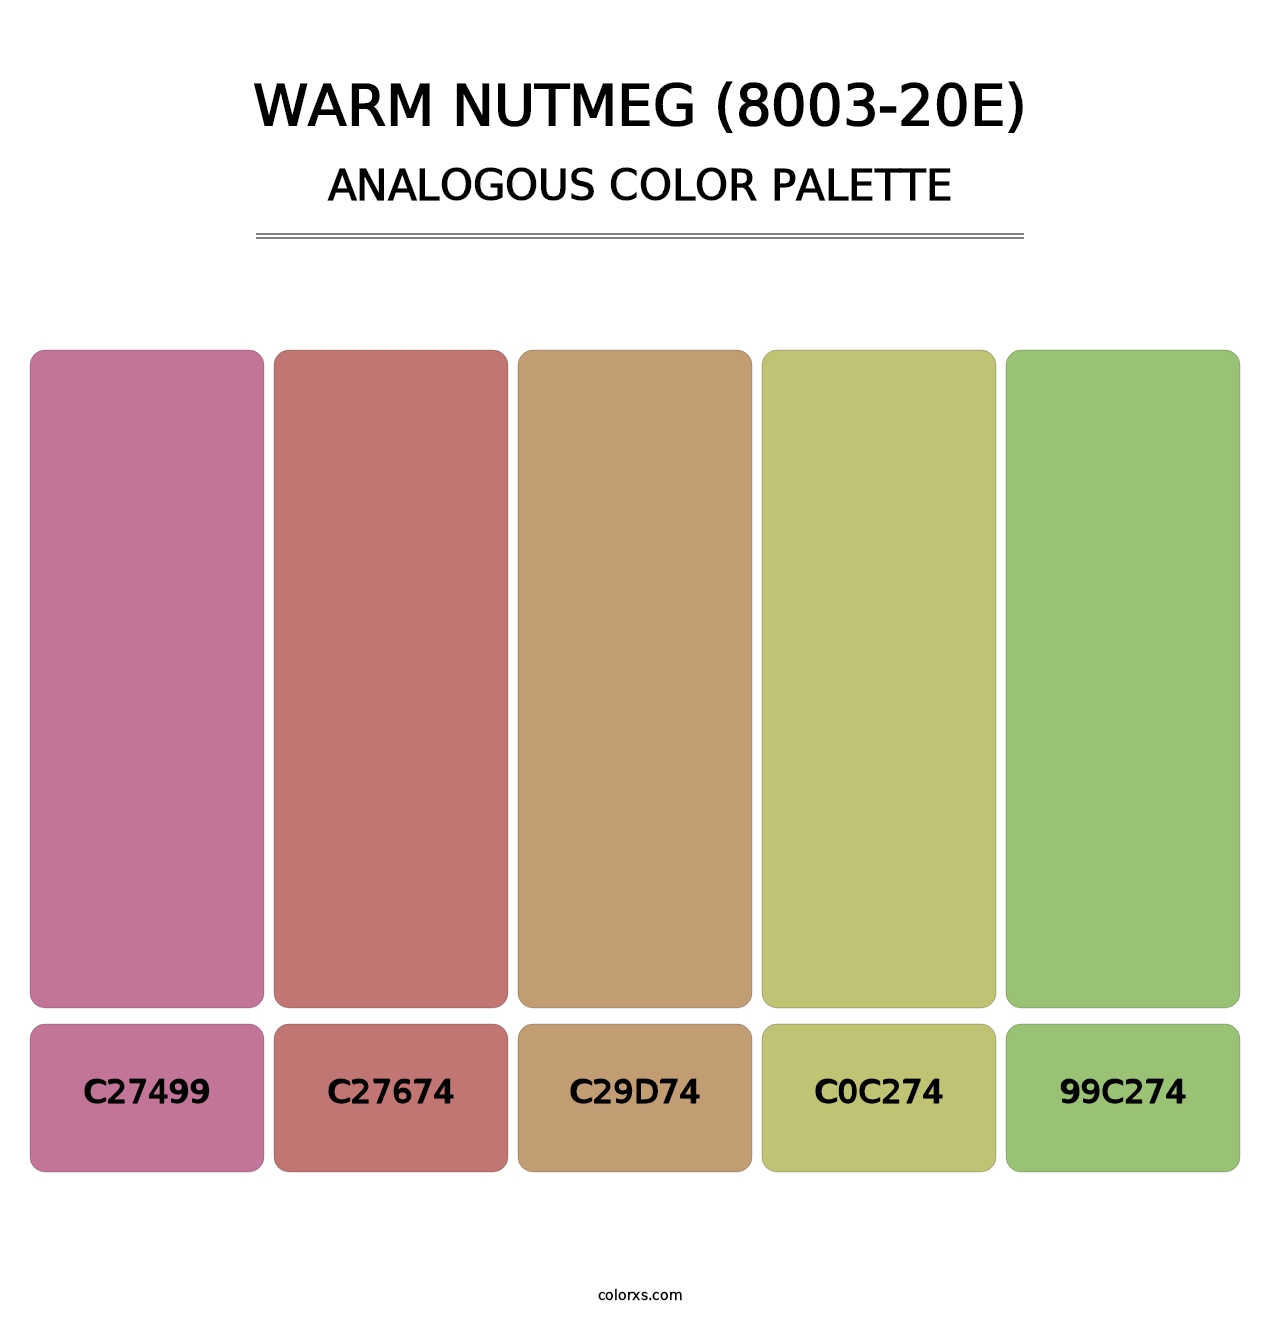 Warm Nutmeg (8003-20E) - Analogous Color Palette